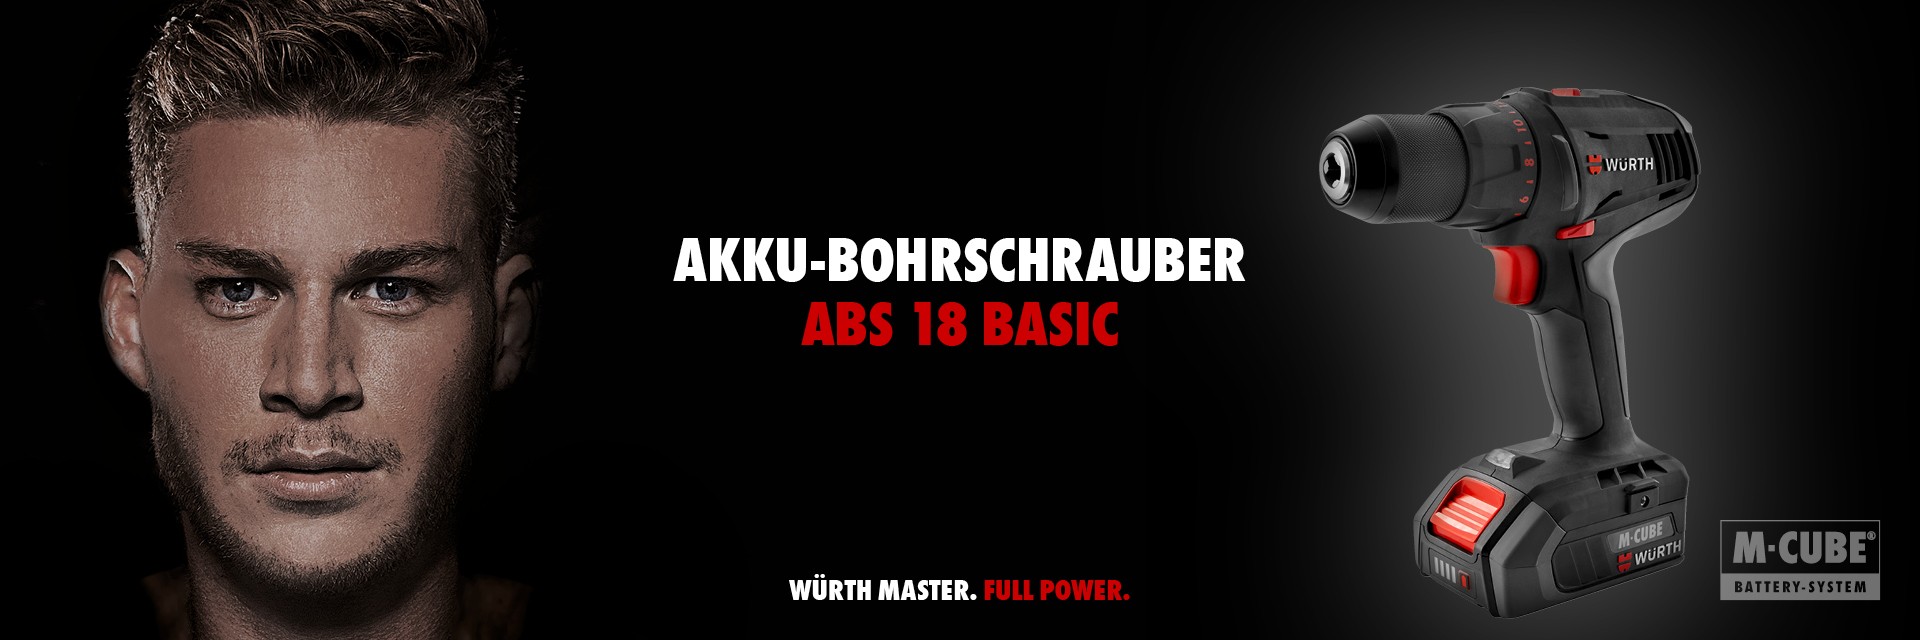 Akku-Bohrschrauber ABS 18 Basic